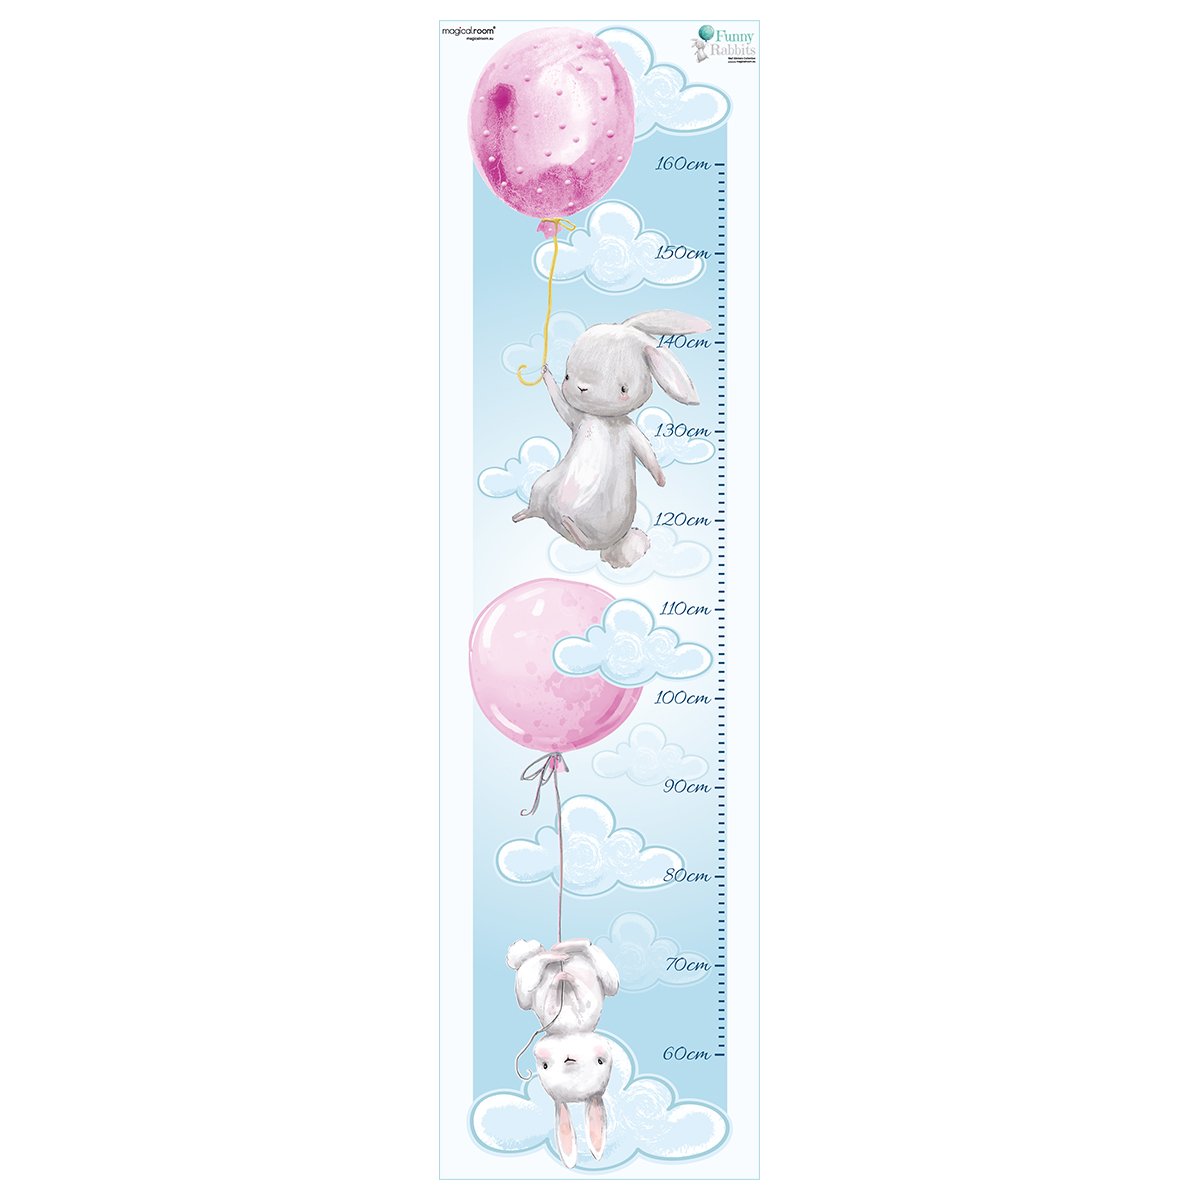 Naklejka na ścianę miarka wzrostu dla dzieci - króliki i latające baloniki#kolor_rozowy